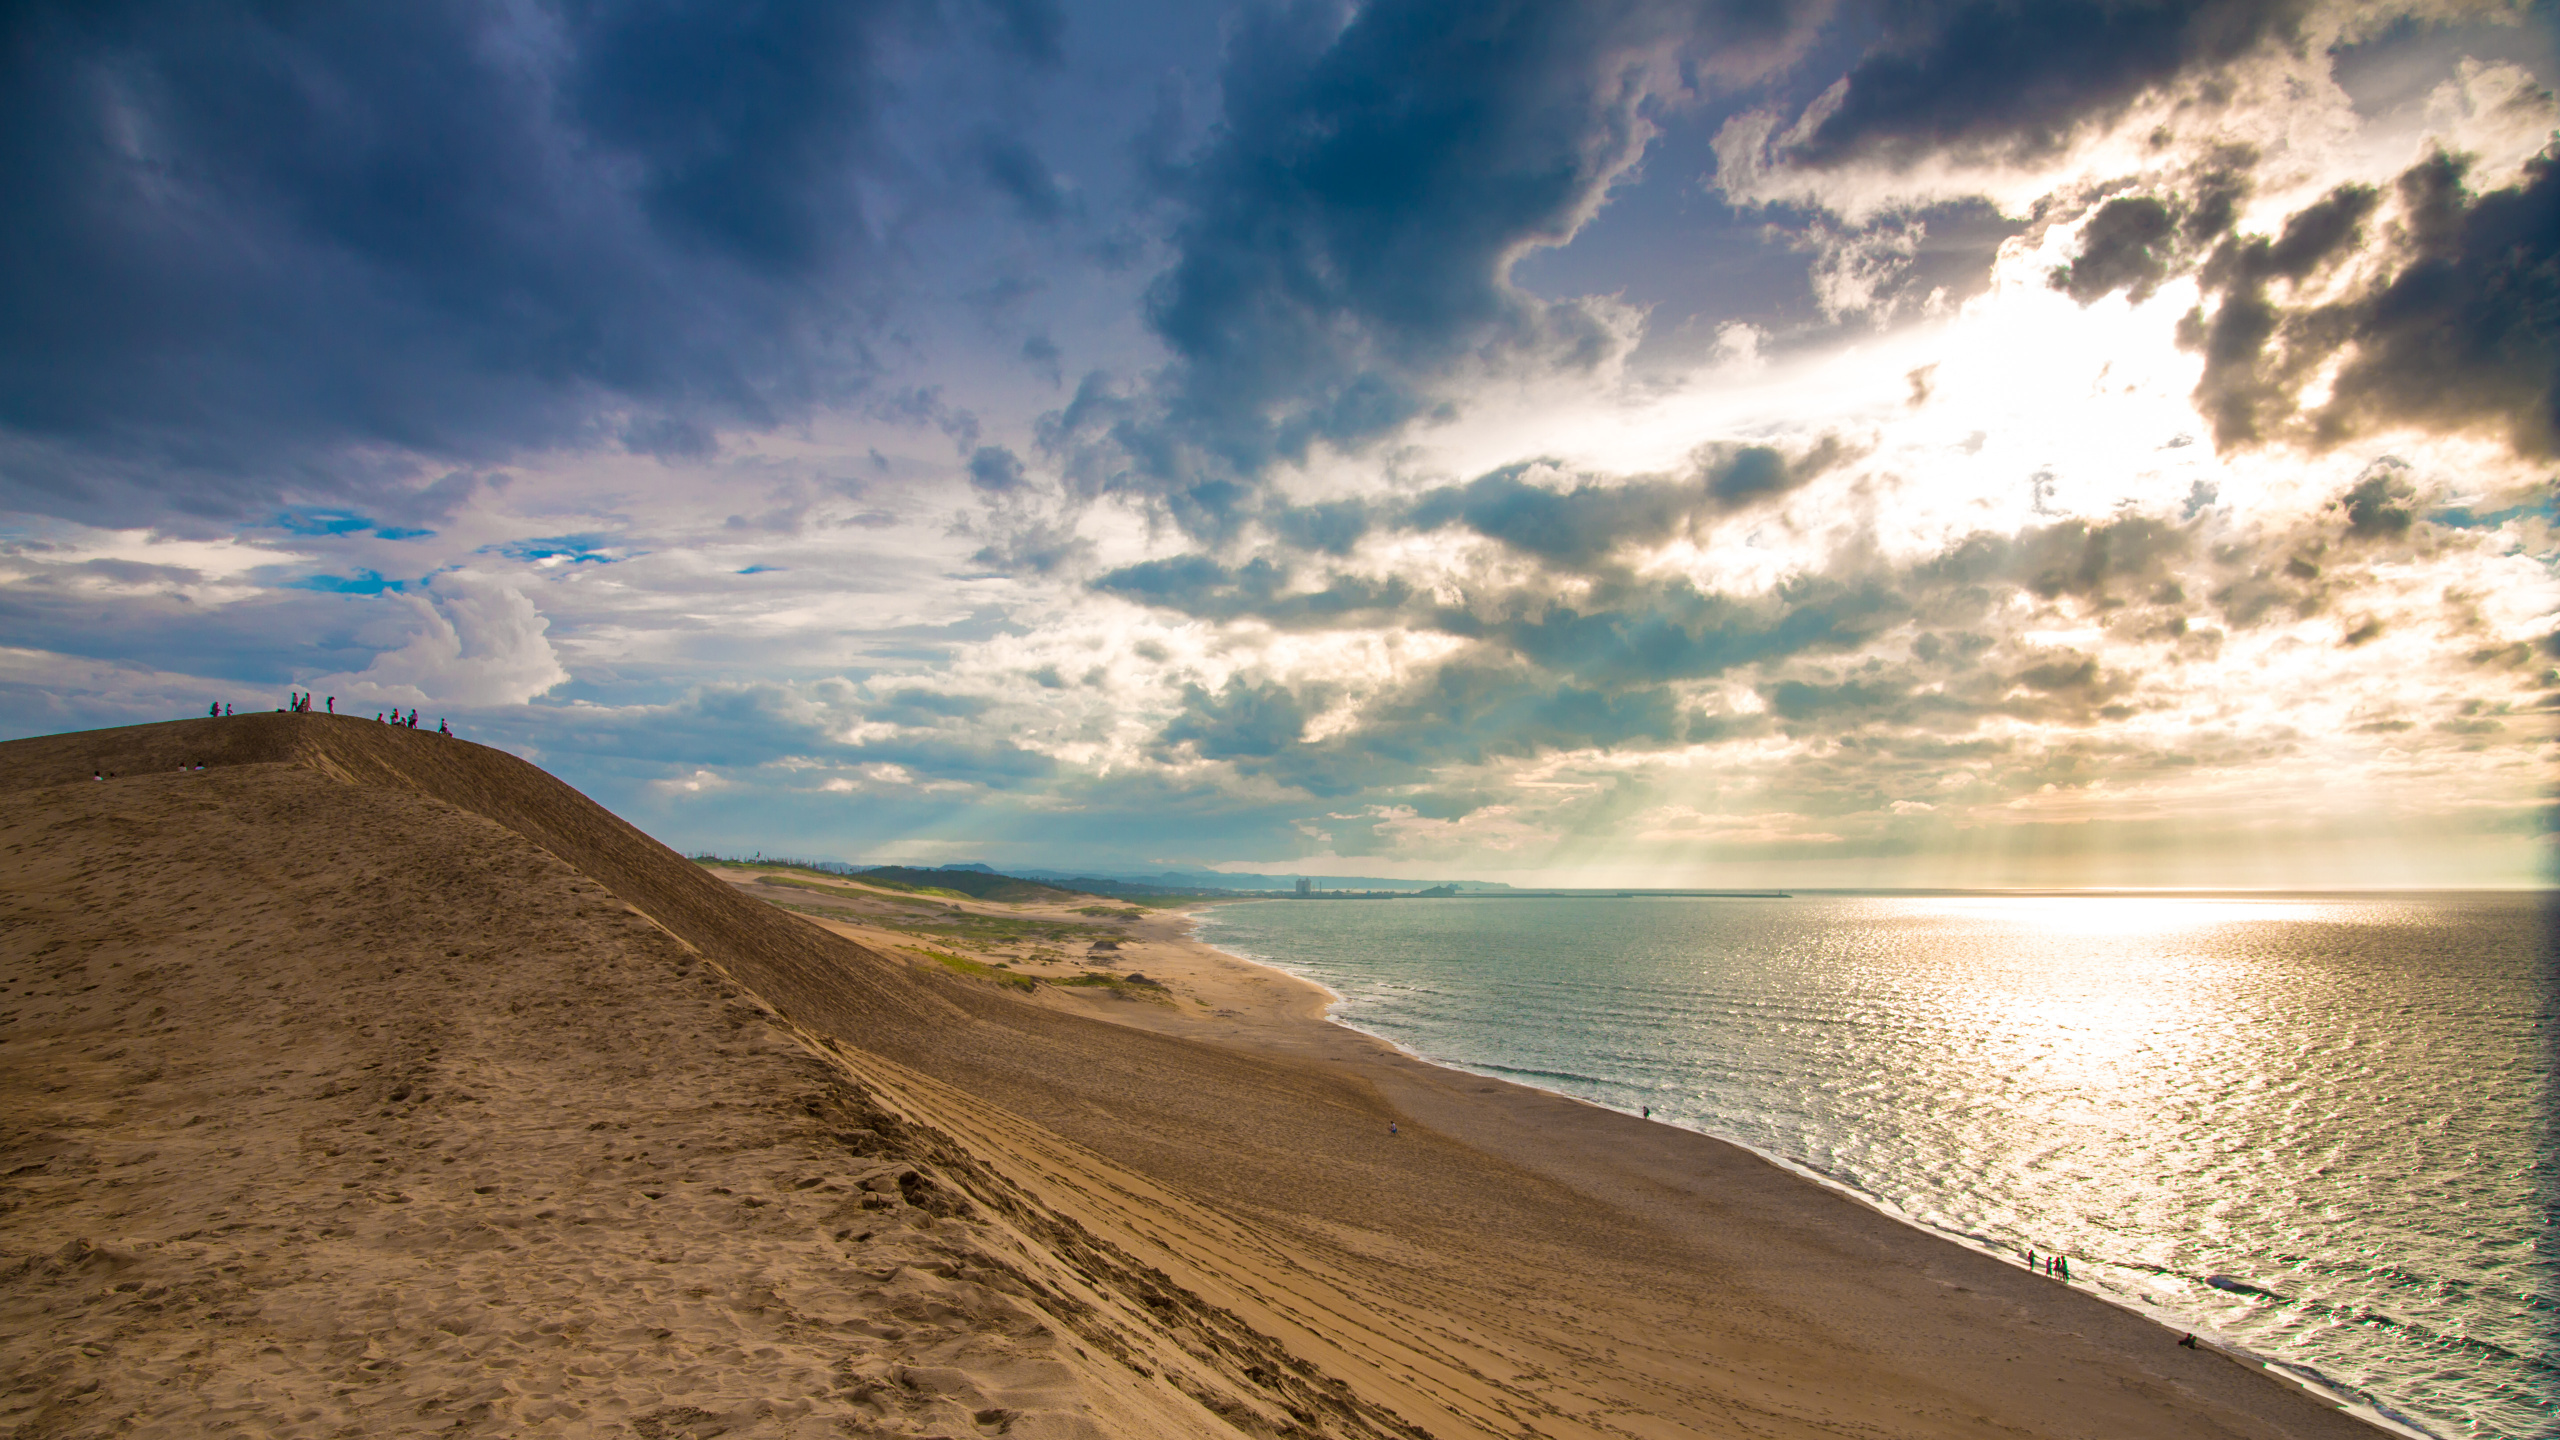 Brauner Sand in Der Nähe Von Gewässern Unter Blauem Himmel Und Weißen Wolken Tagsüber. Wallpaper in 2560x1440 Resolution